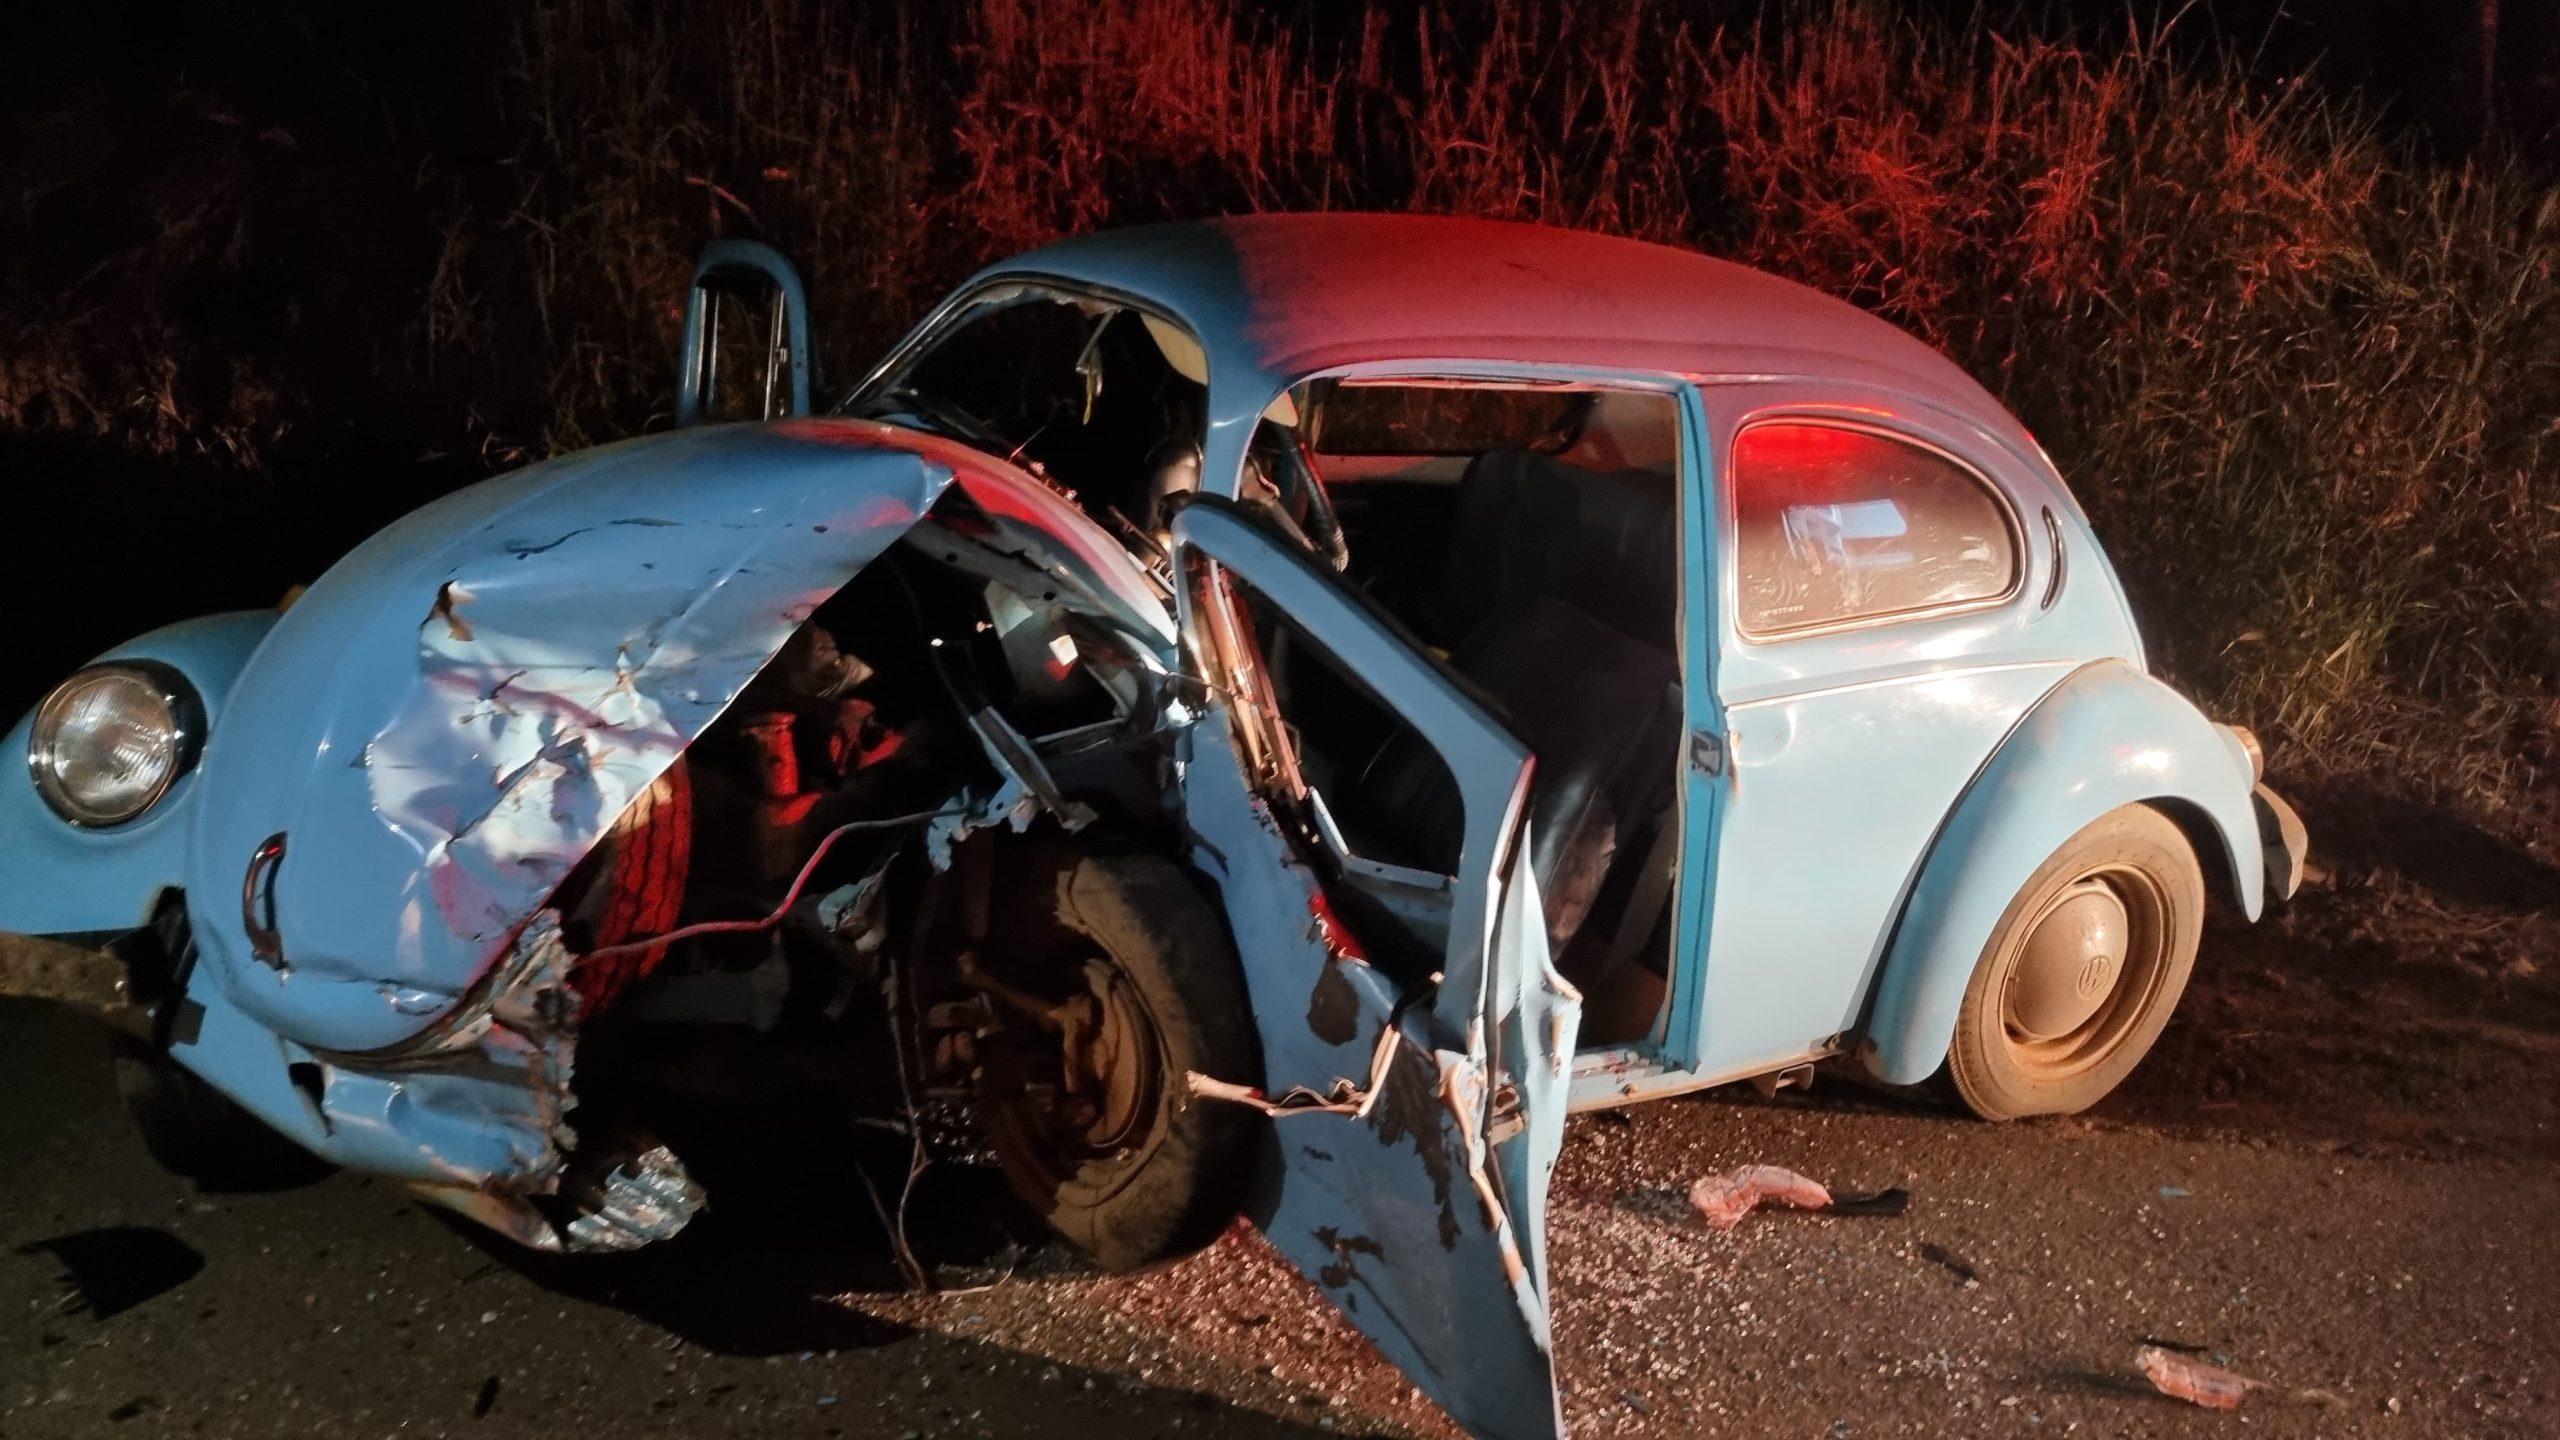 PERTO DA TRAGÉDIA: colisão destrói carros e deixa 4   vítimas